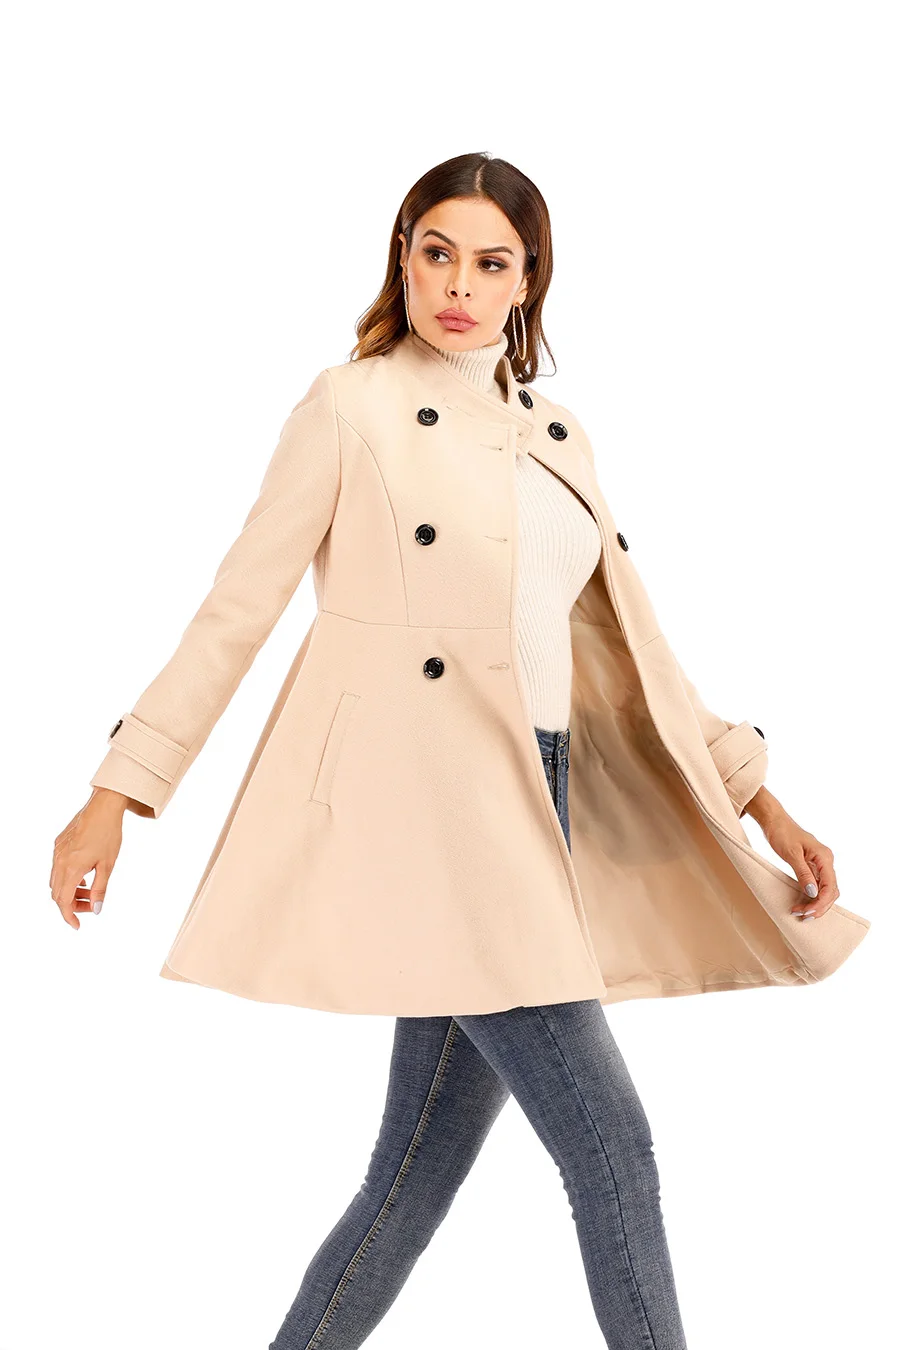 Benuynffy винтажное двубортное пальто с баской осенне-зимнее женское элегантный воротник-стойка шерстяное пальто женское тонкое пальто верхняя одежда